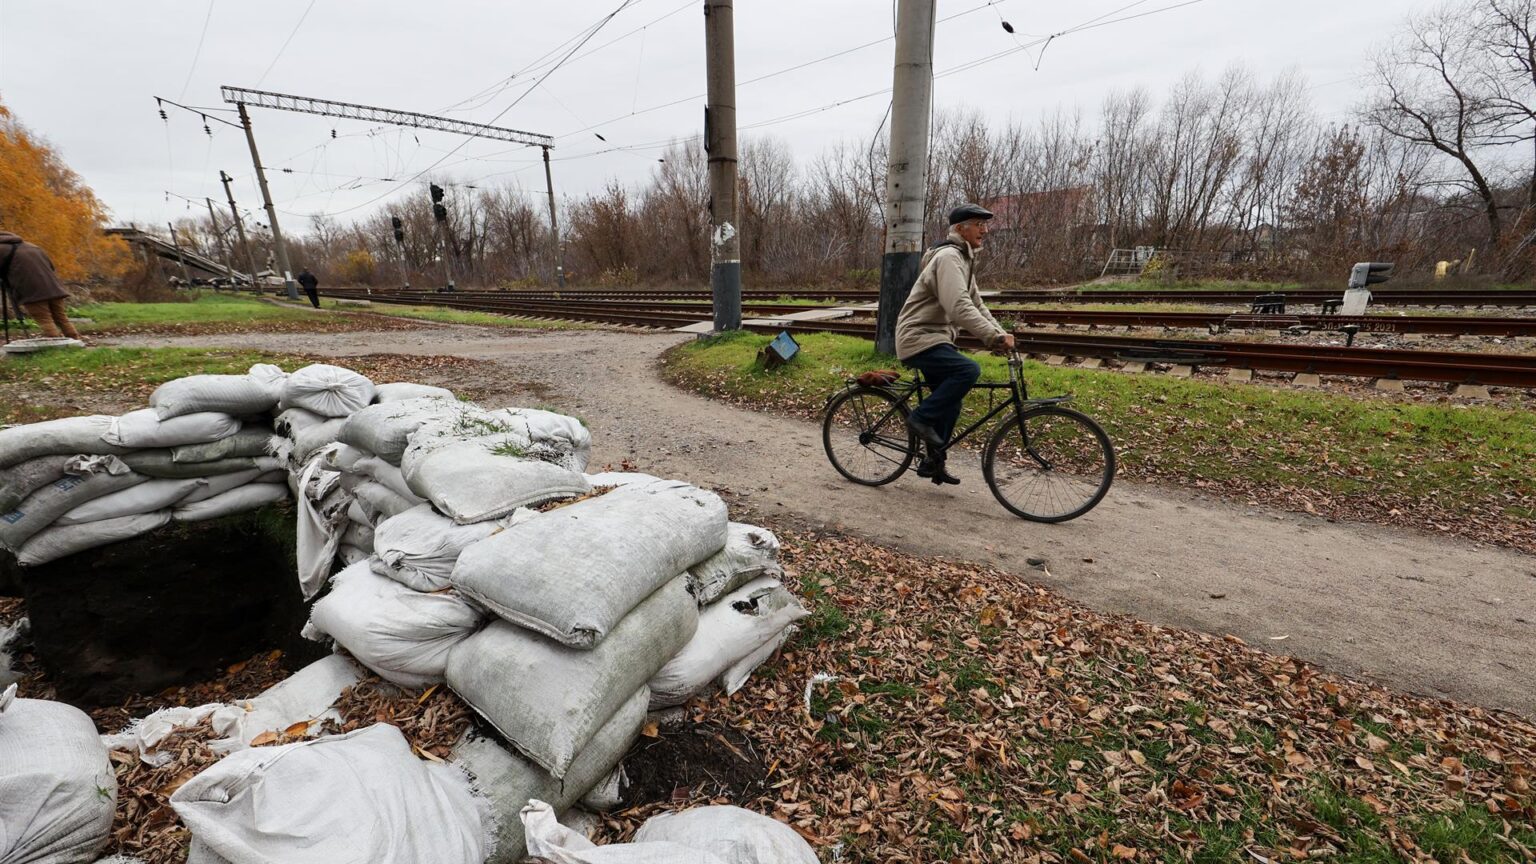 El Banco Mundial desembolsará 47 millones de euros para reparar infraestructuras en Ucrania